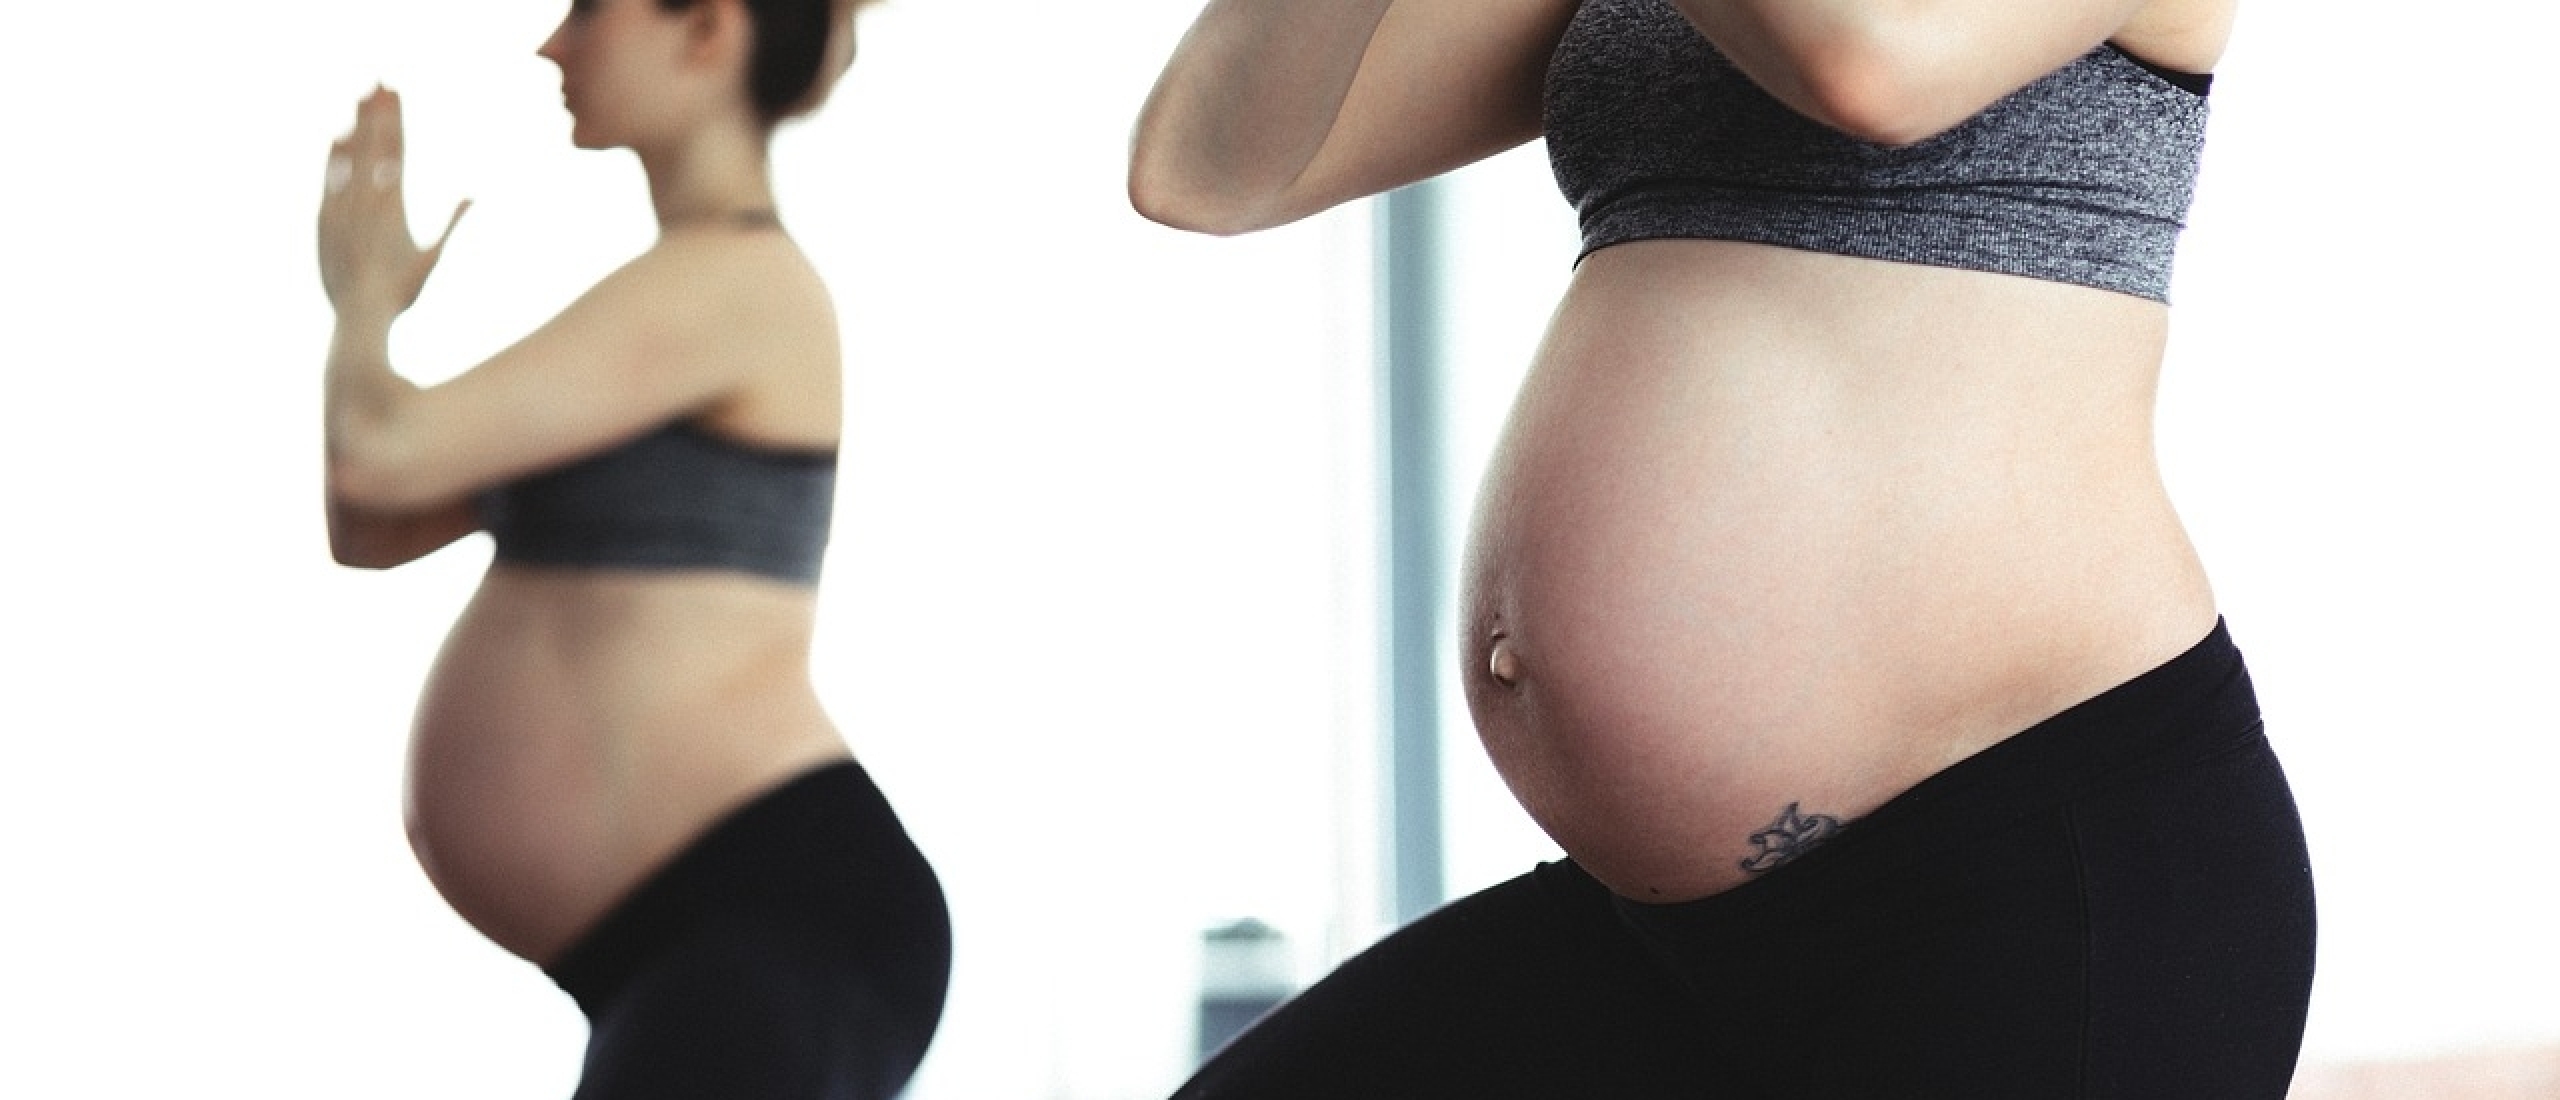 Sporten na de bevalling: Wanneer mag je weer beginnen?